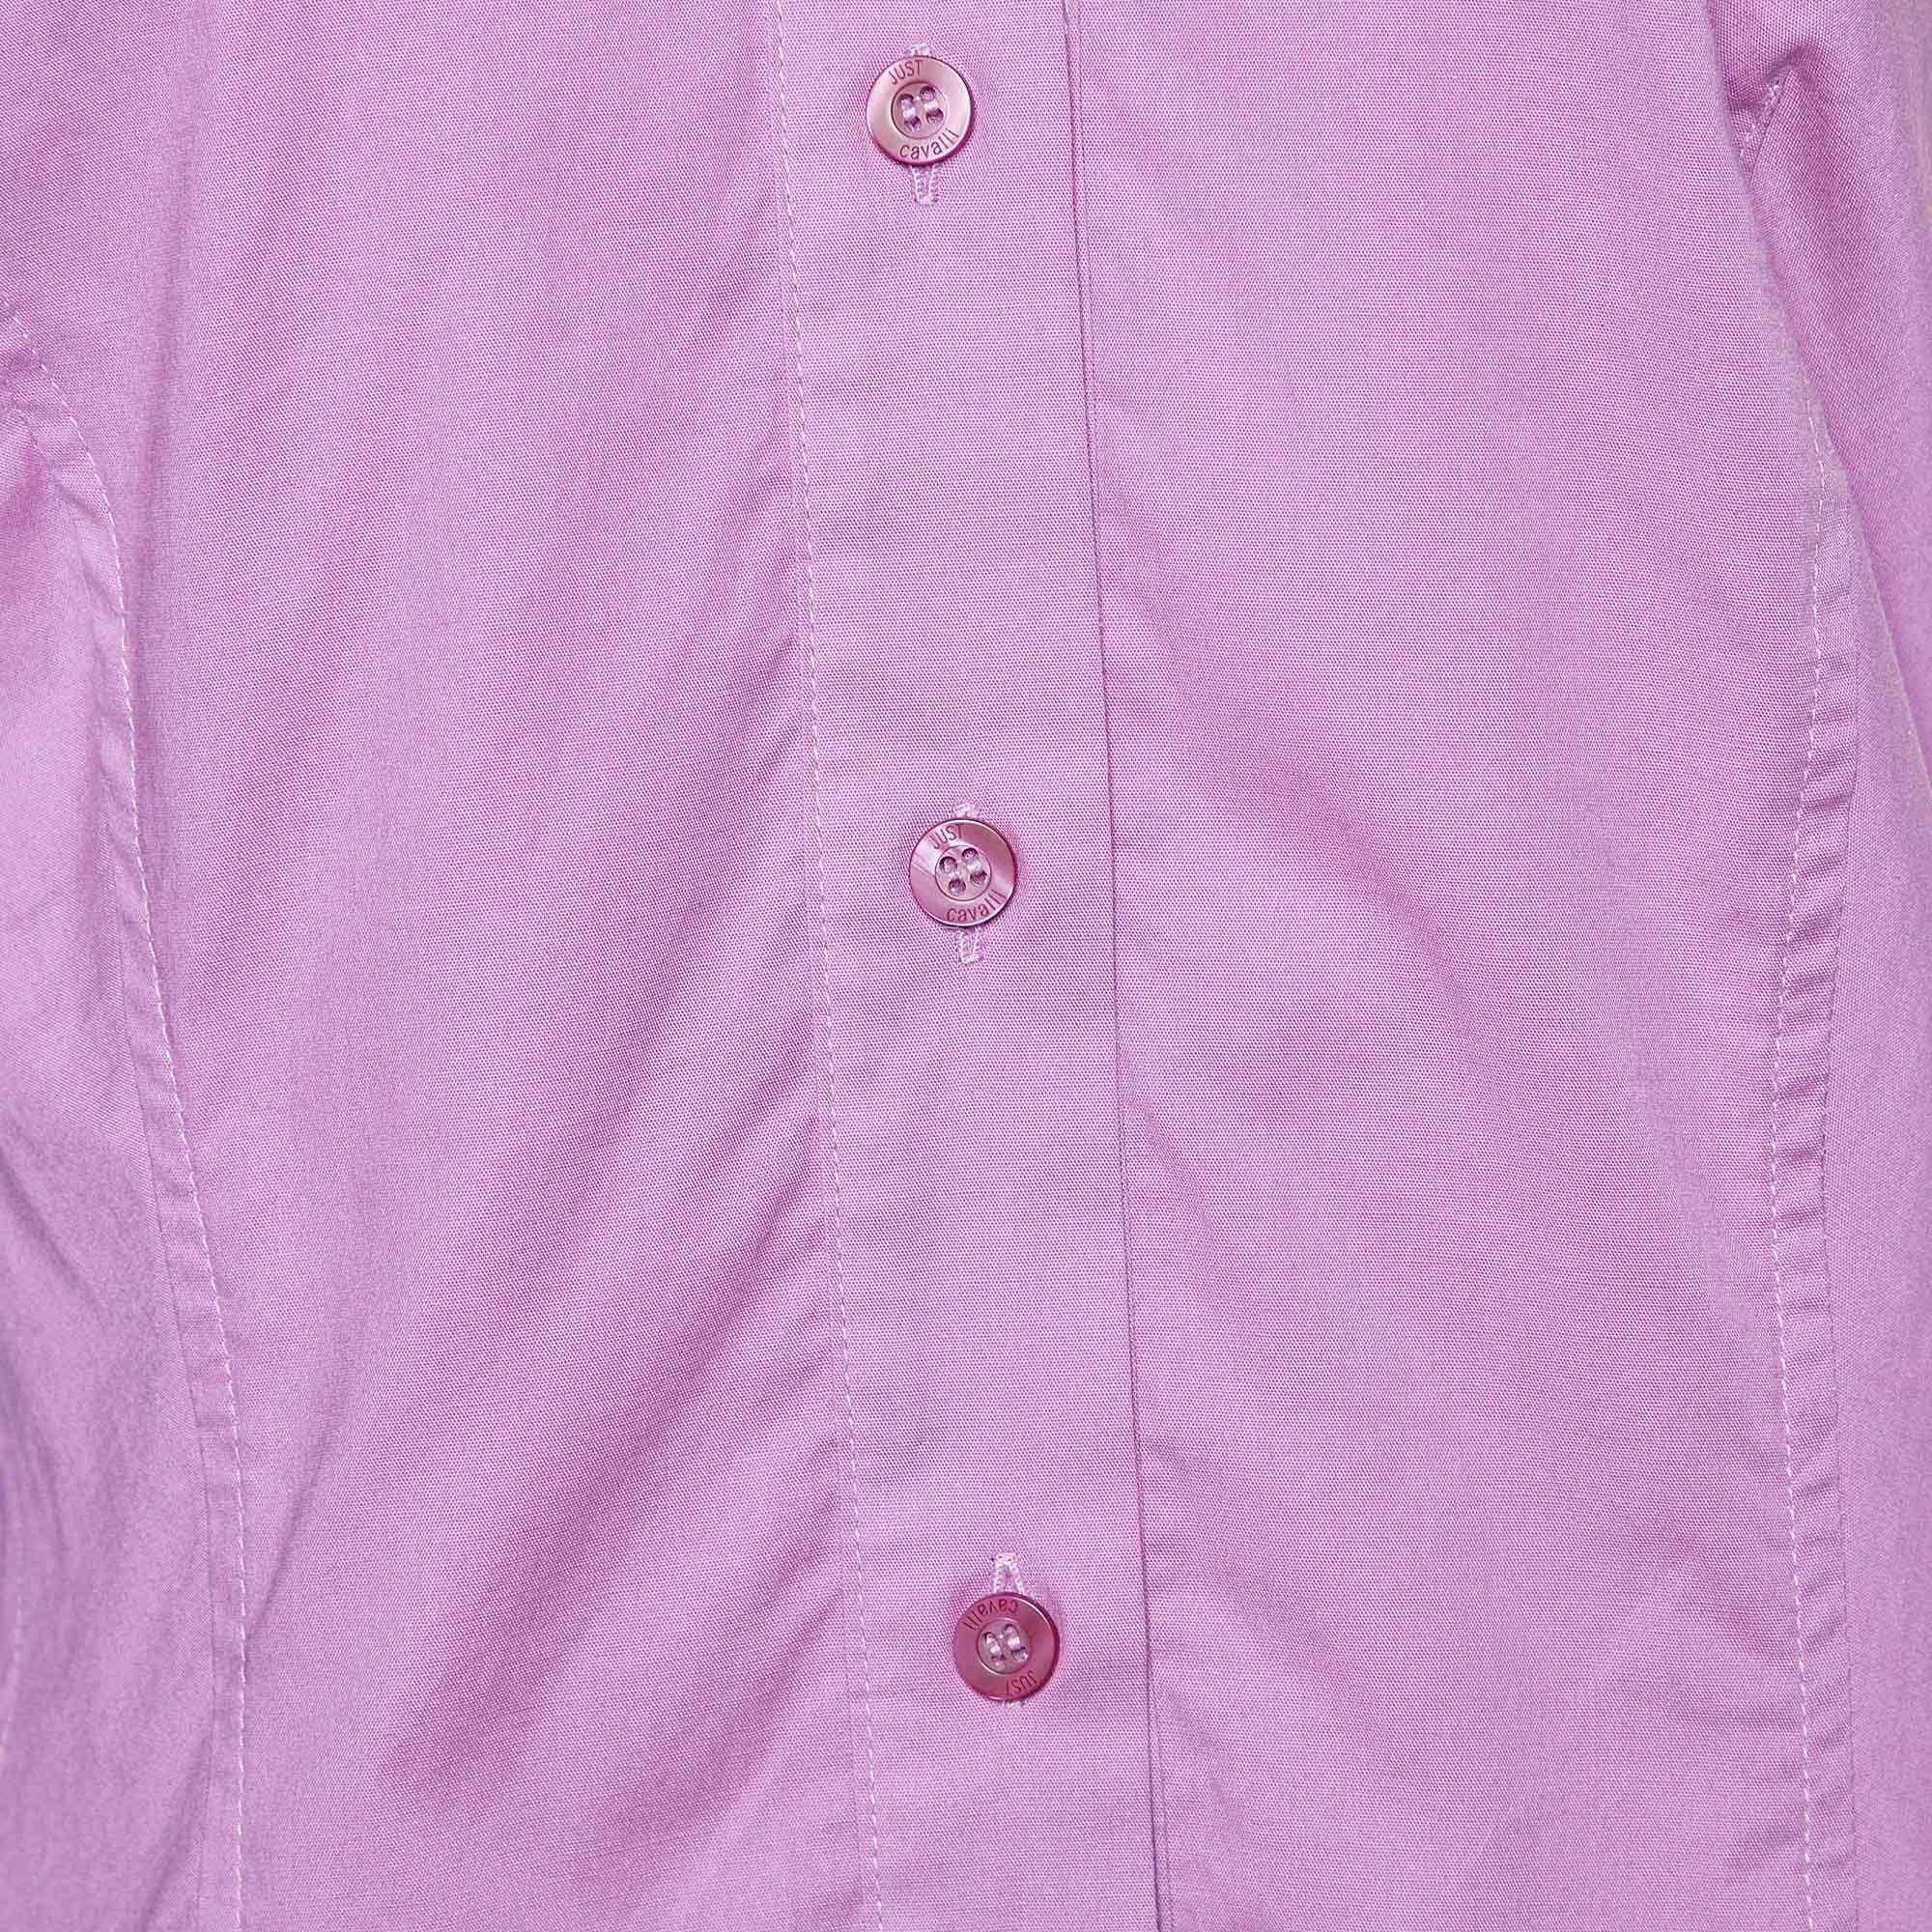 Just Cavalli Purple Cotton Tie Detail Shirt M For Sale 1